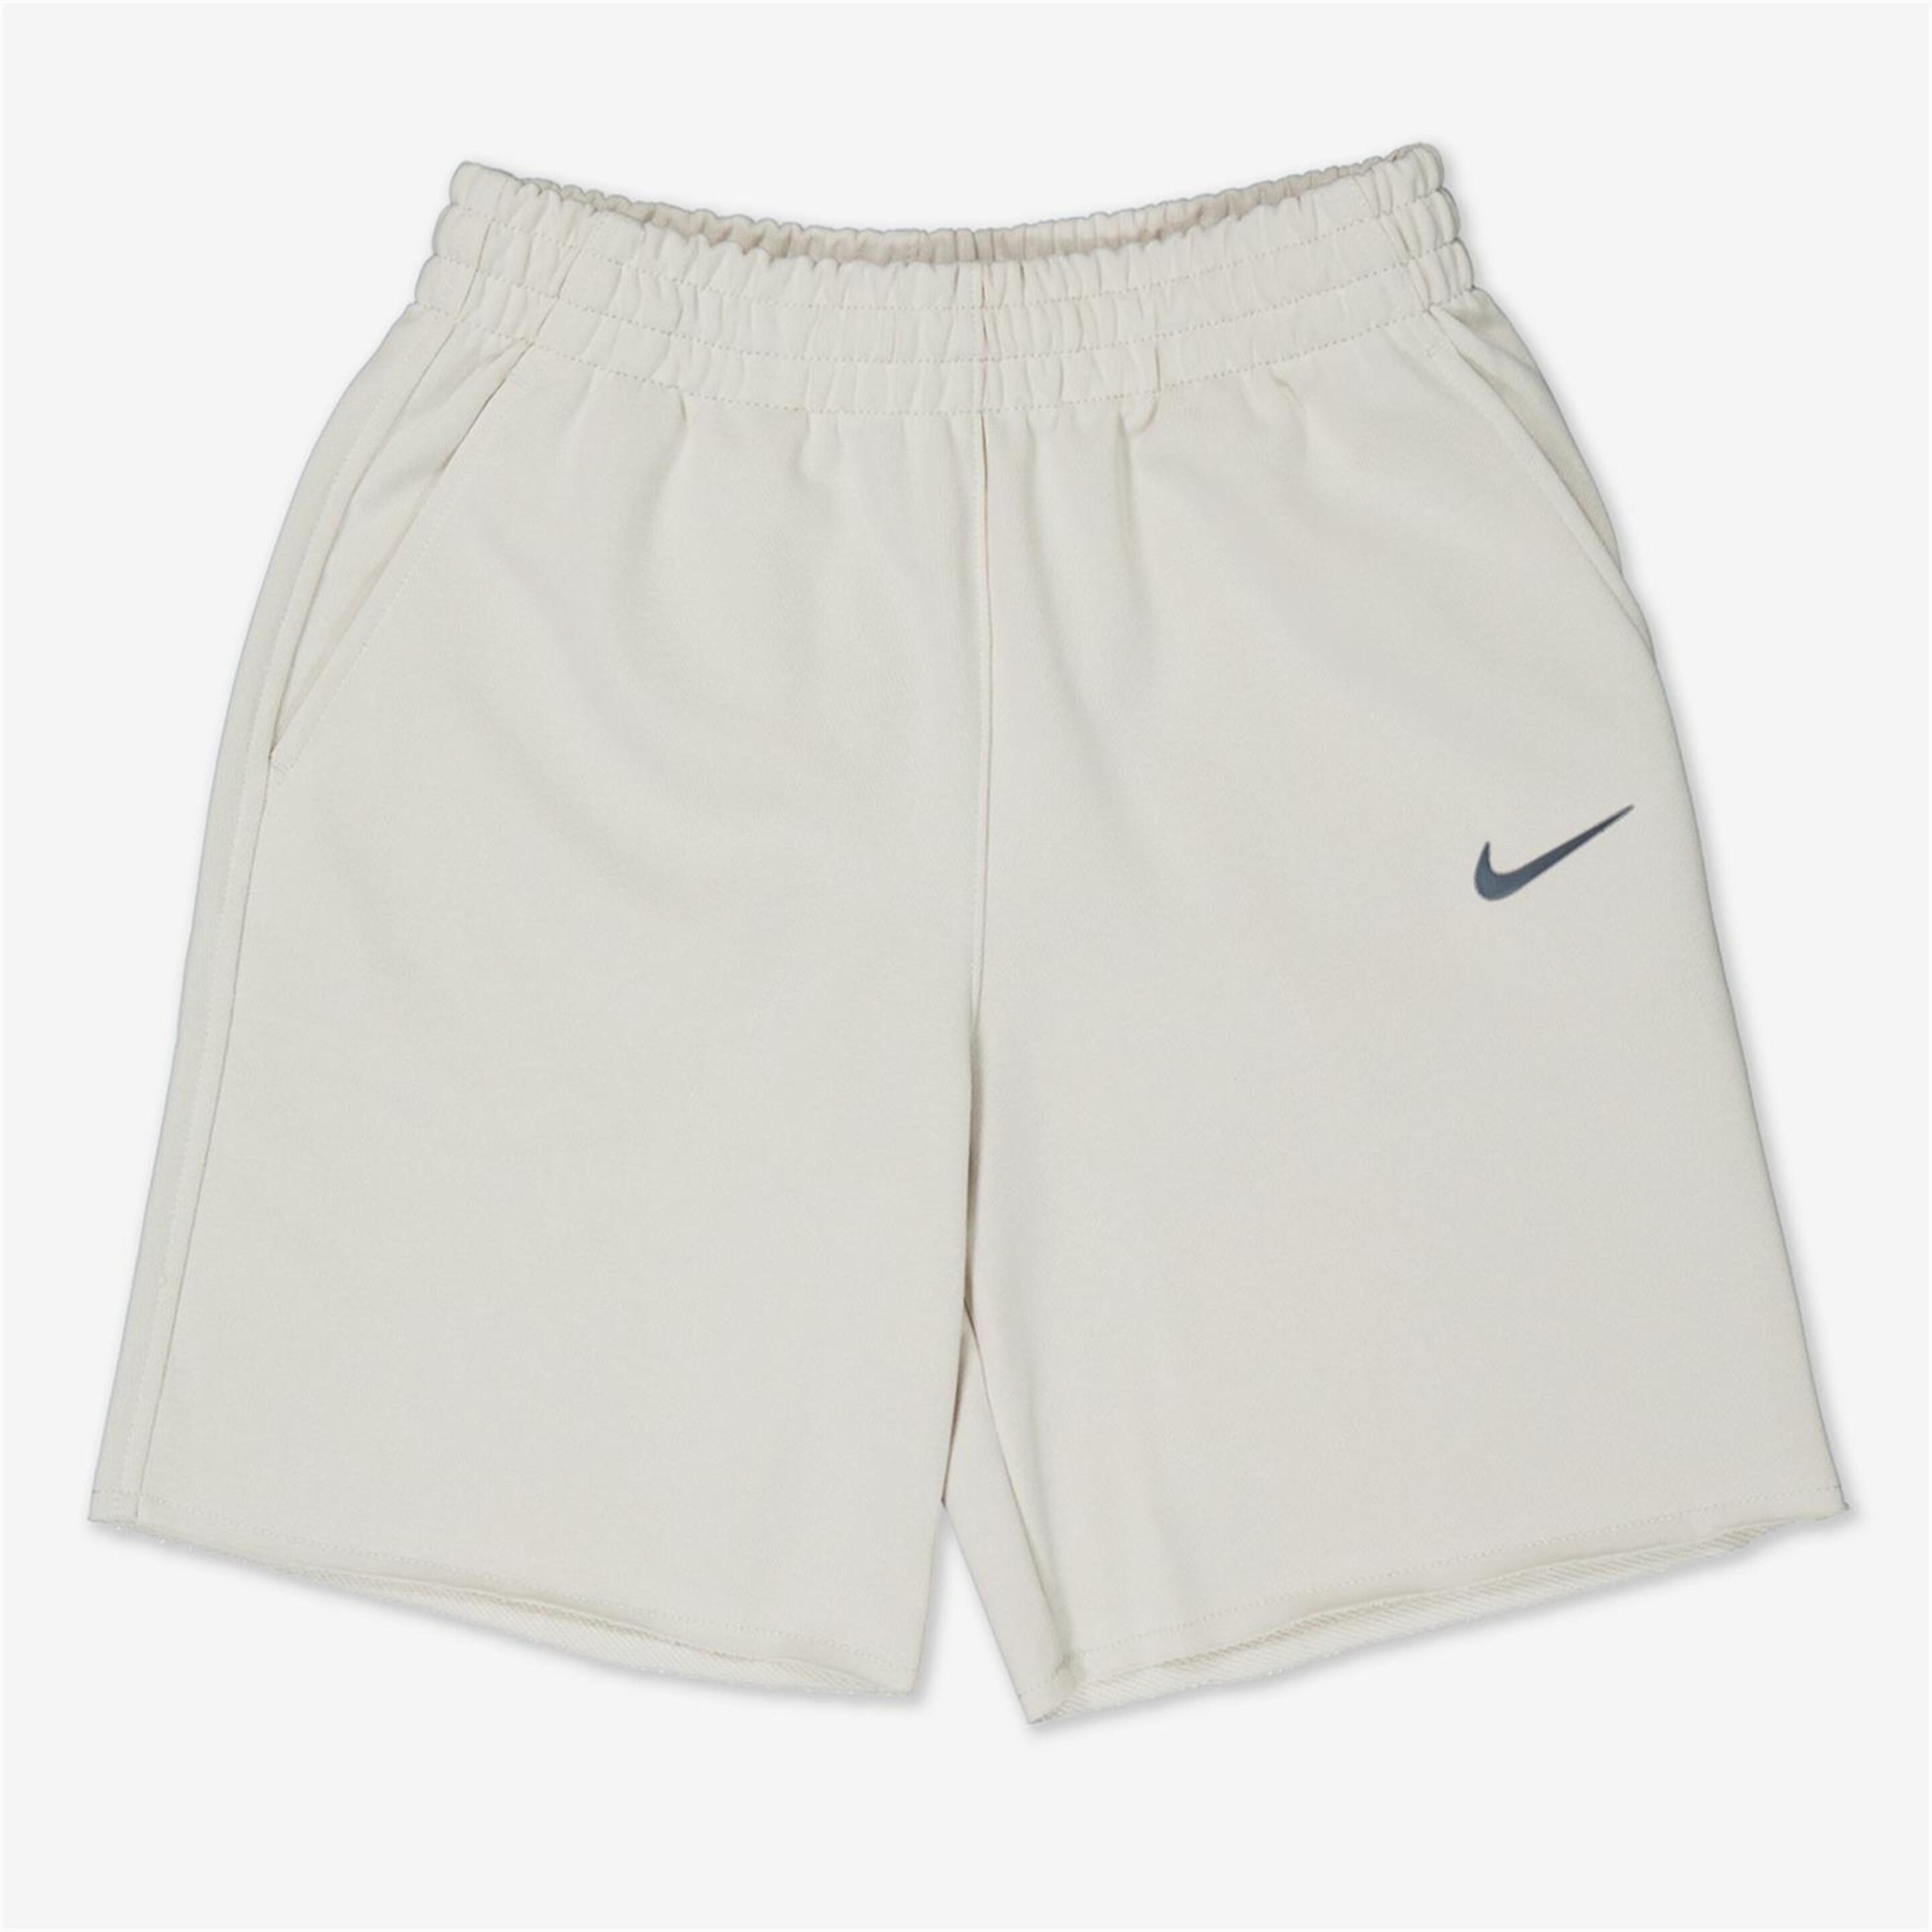 Pantalón Corto Nike - Marrón - Bermuda Niña